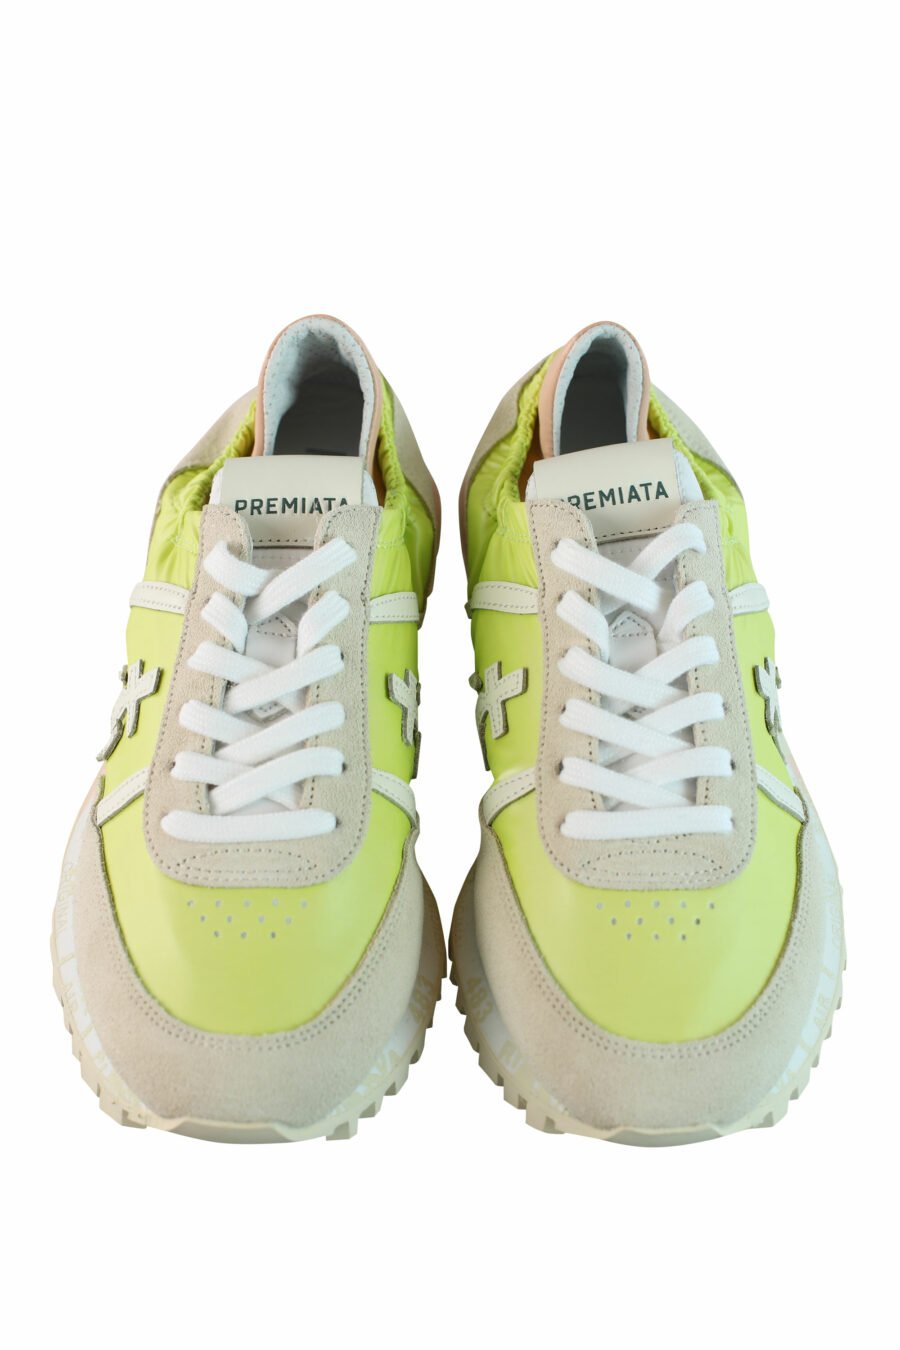 Zapatillas verde lima con elástico "sean-d 6248" - IMG 0848